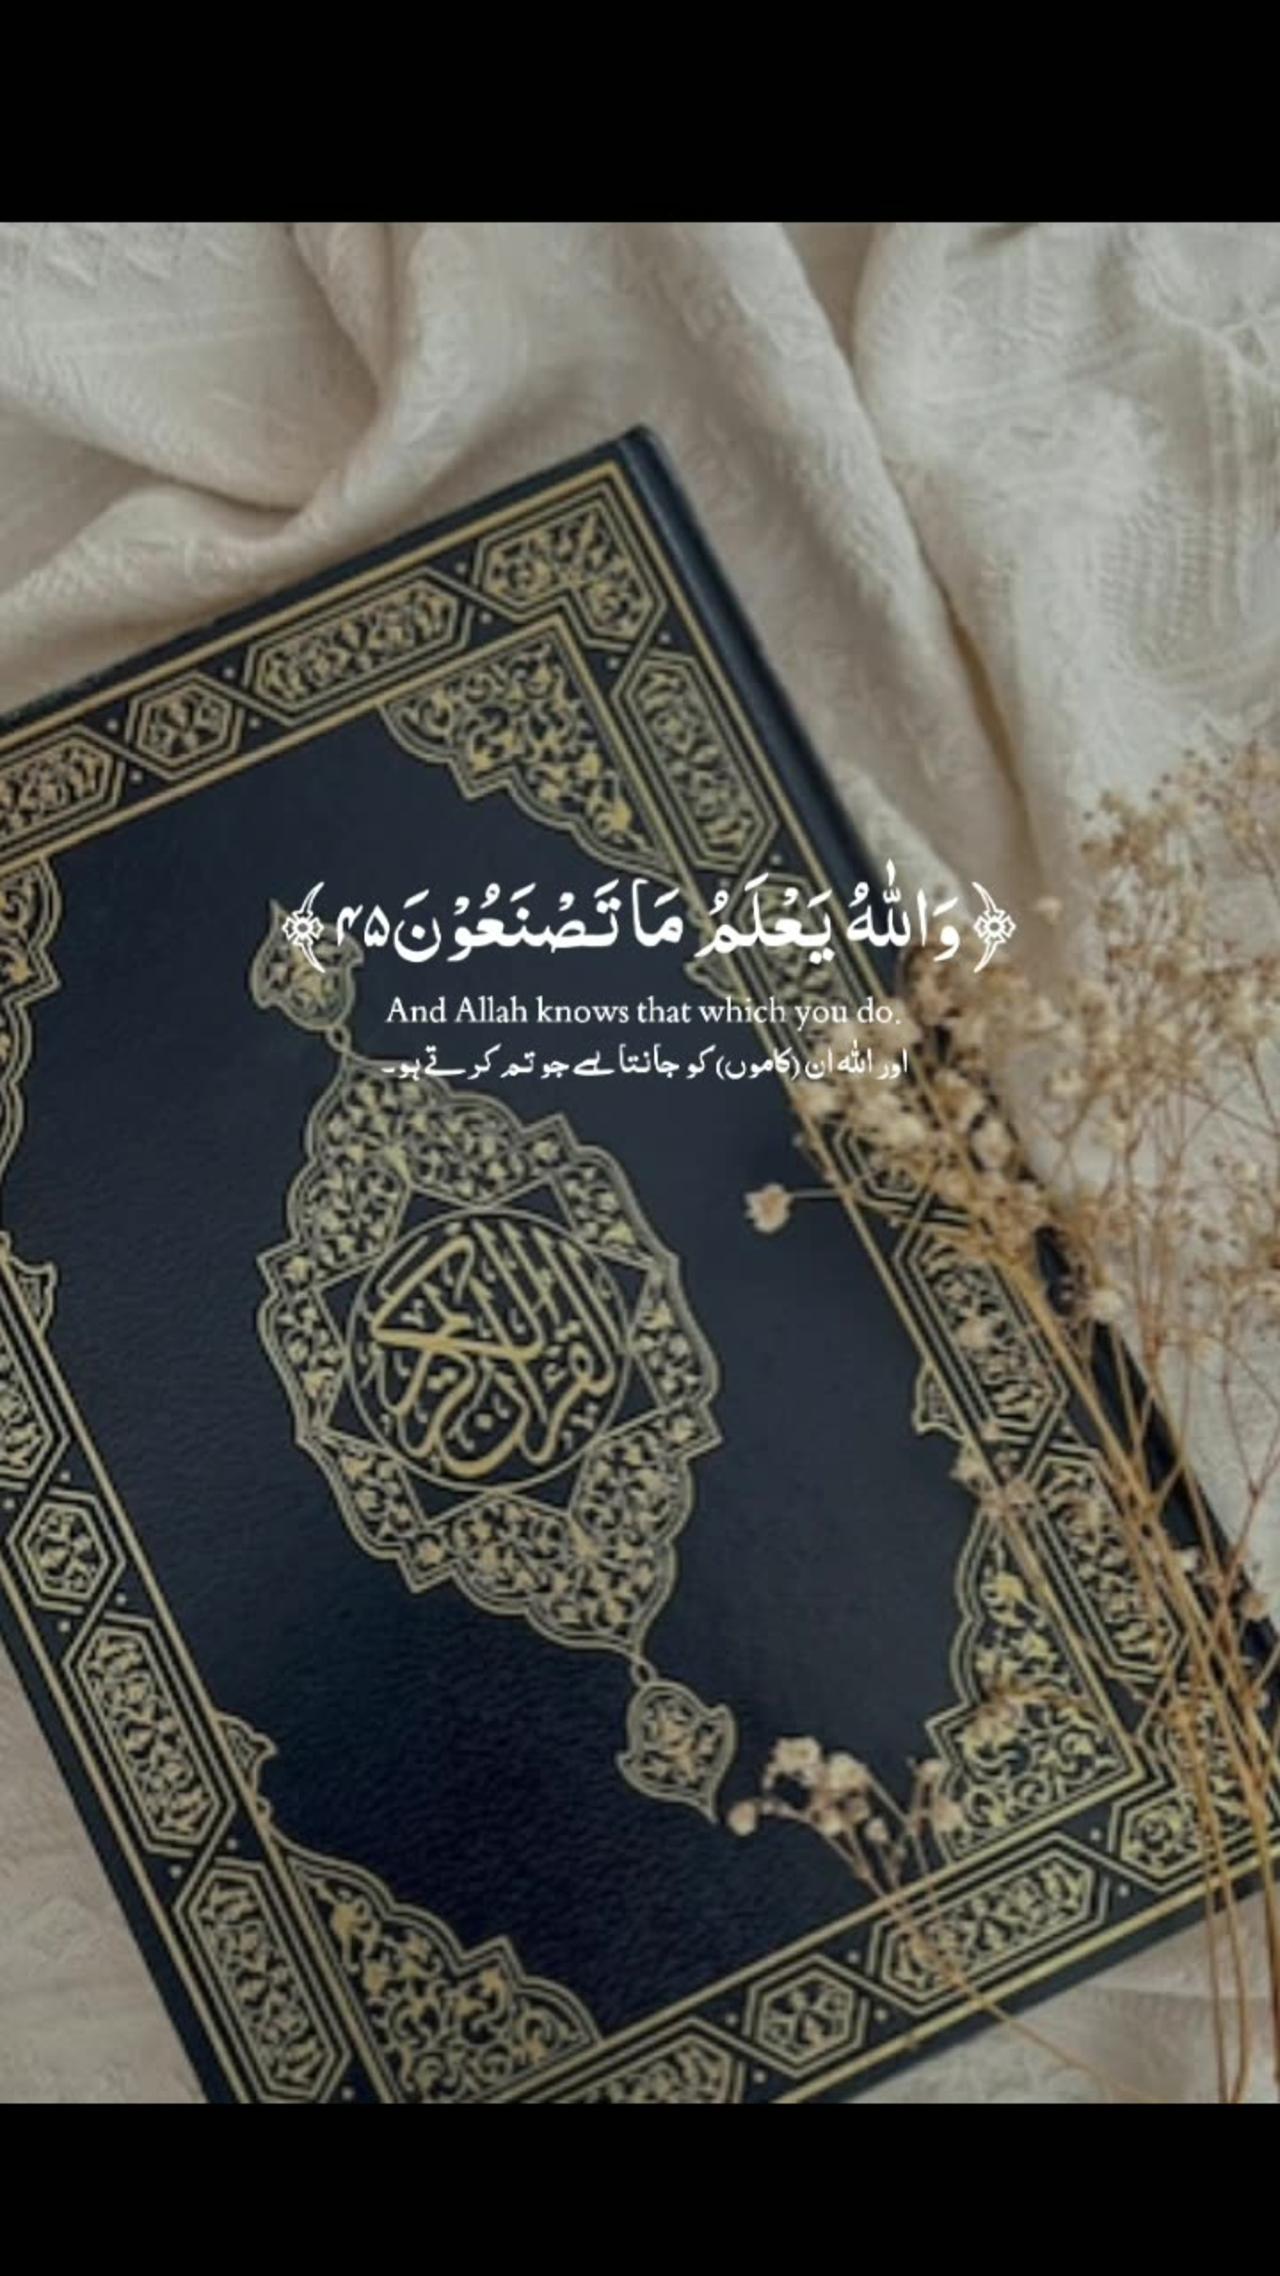 Quran verses